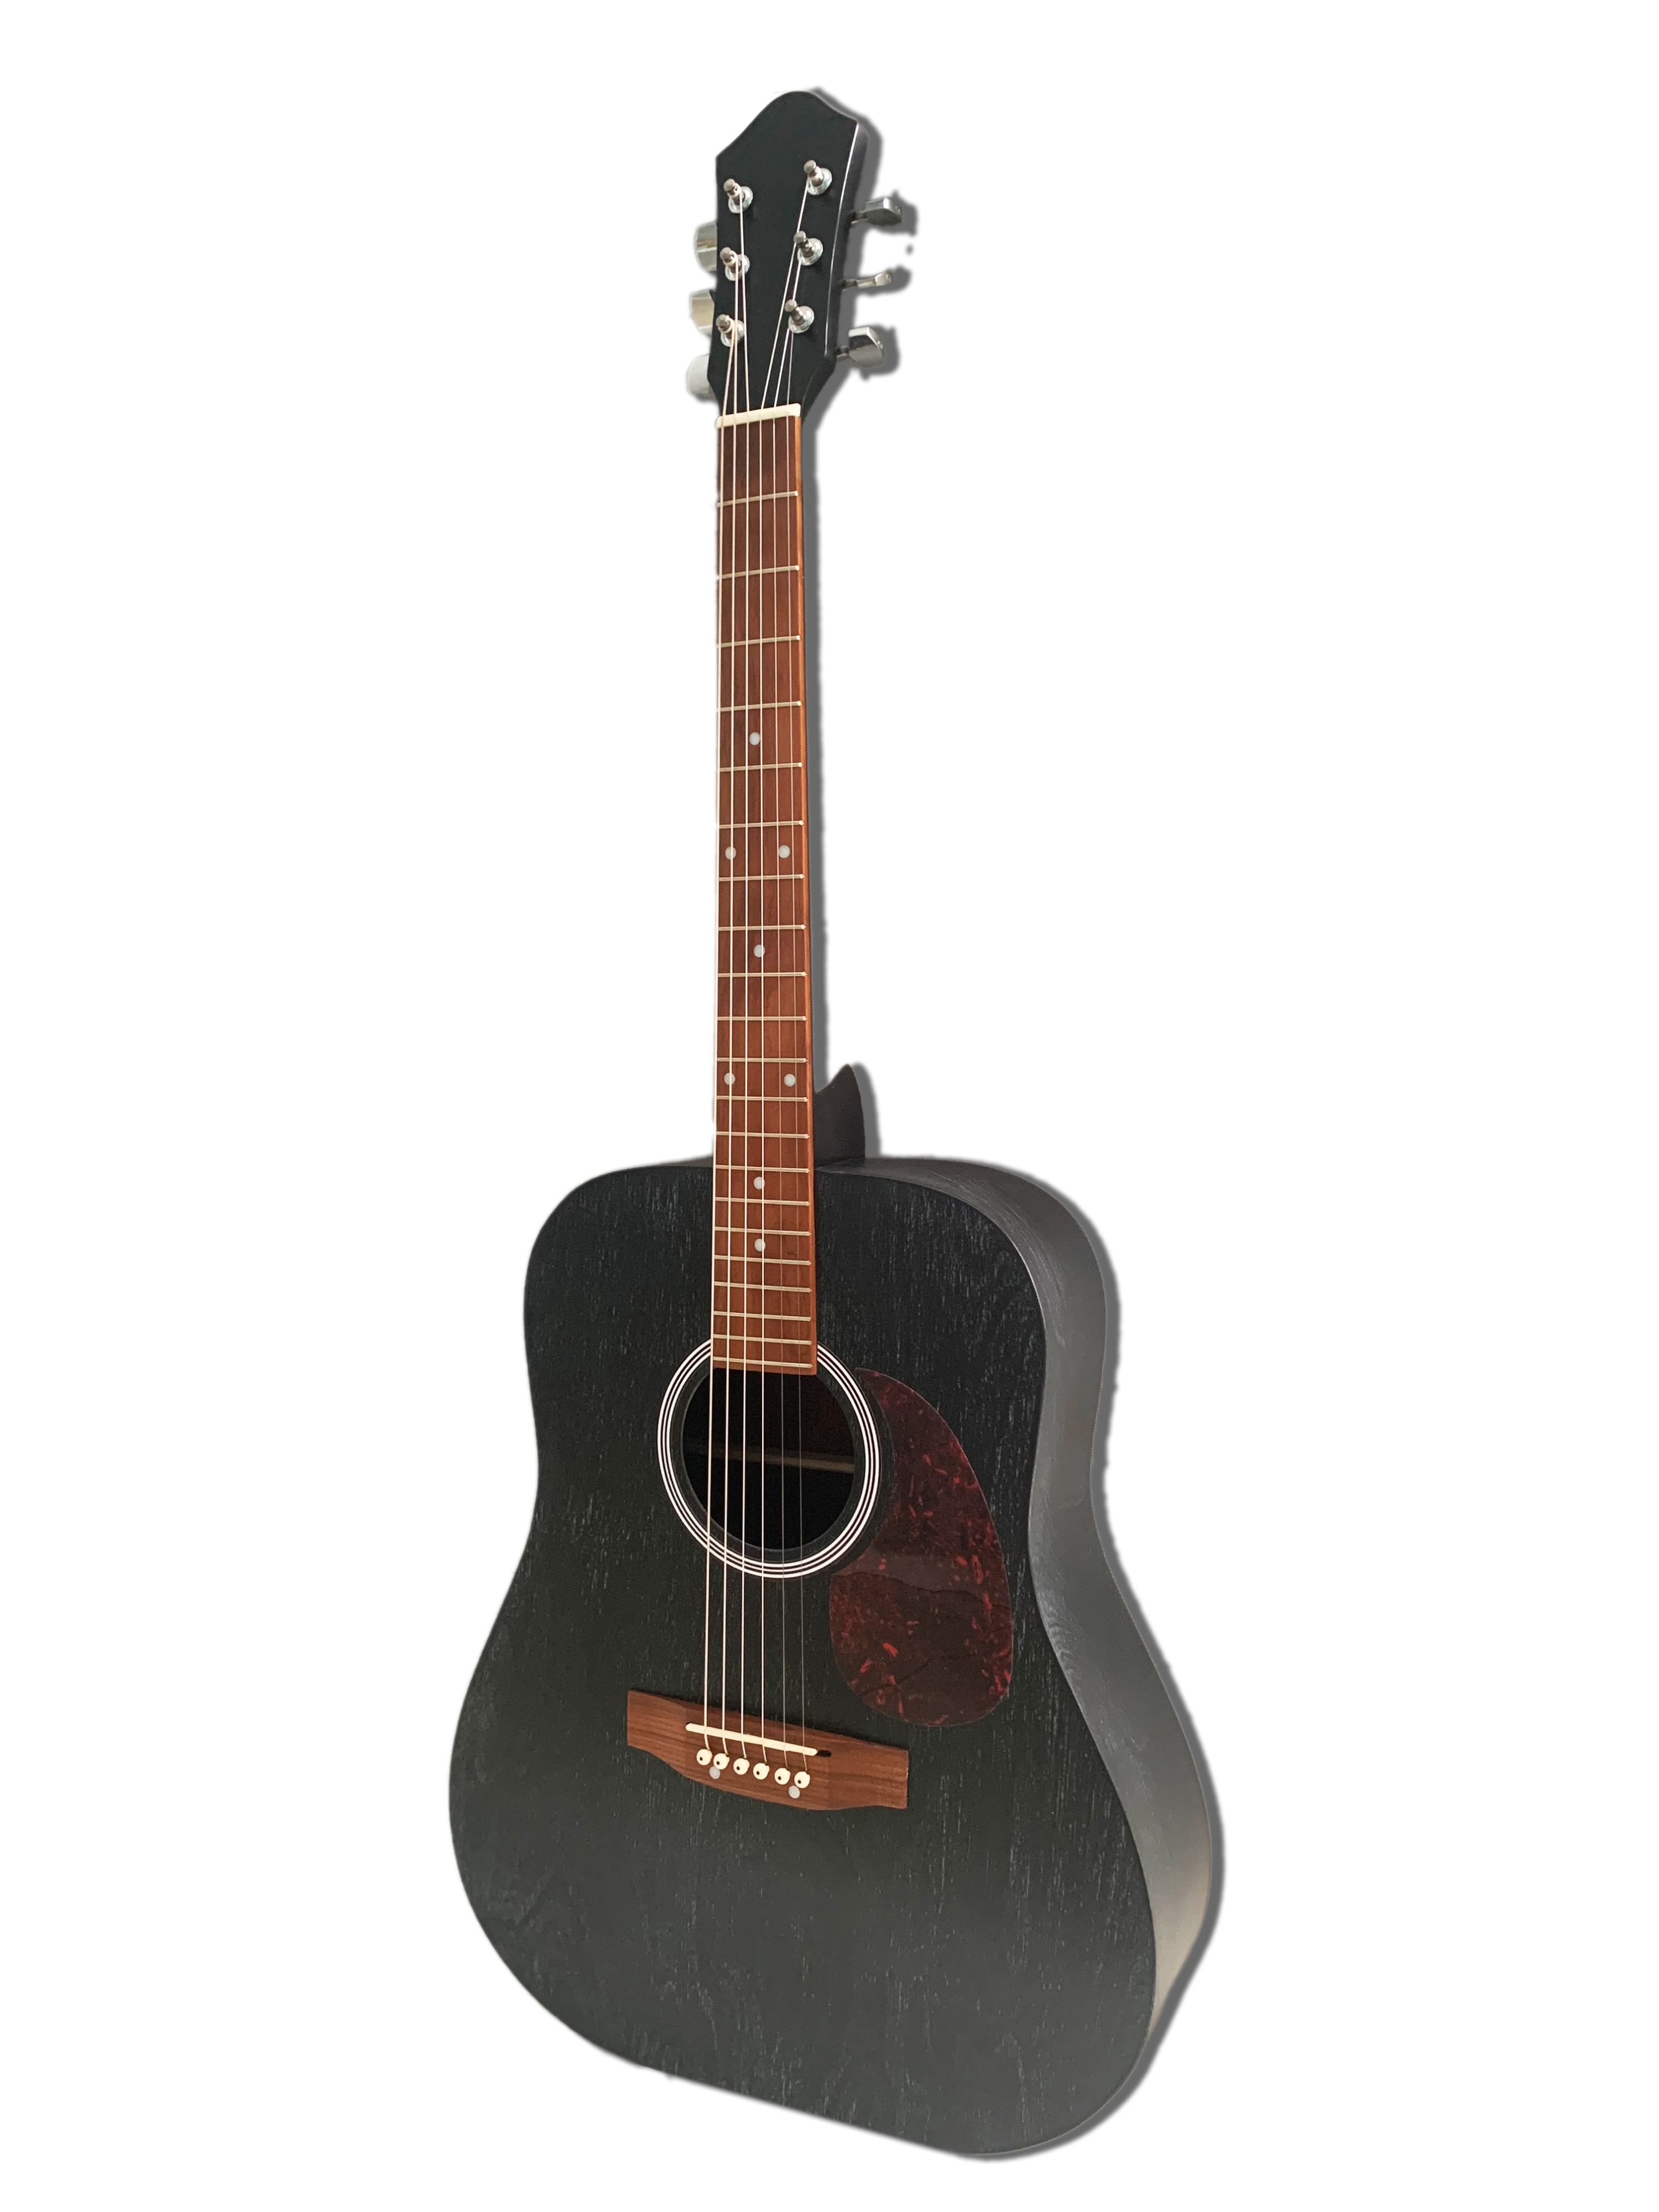 Акустические гитары Парма MB-12-52 черная монстра и белый хвост